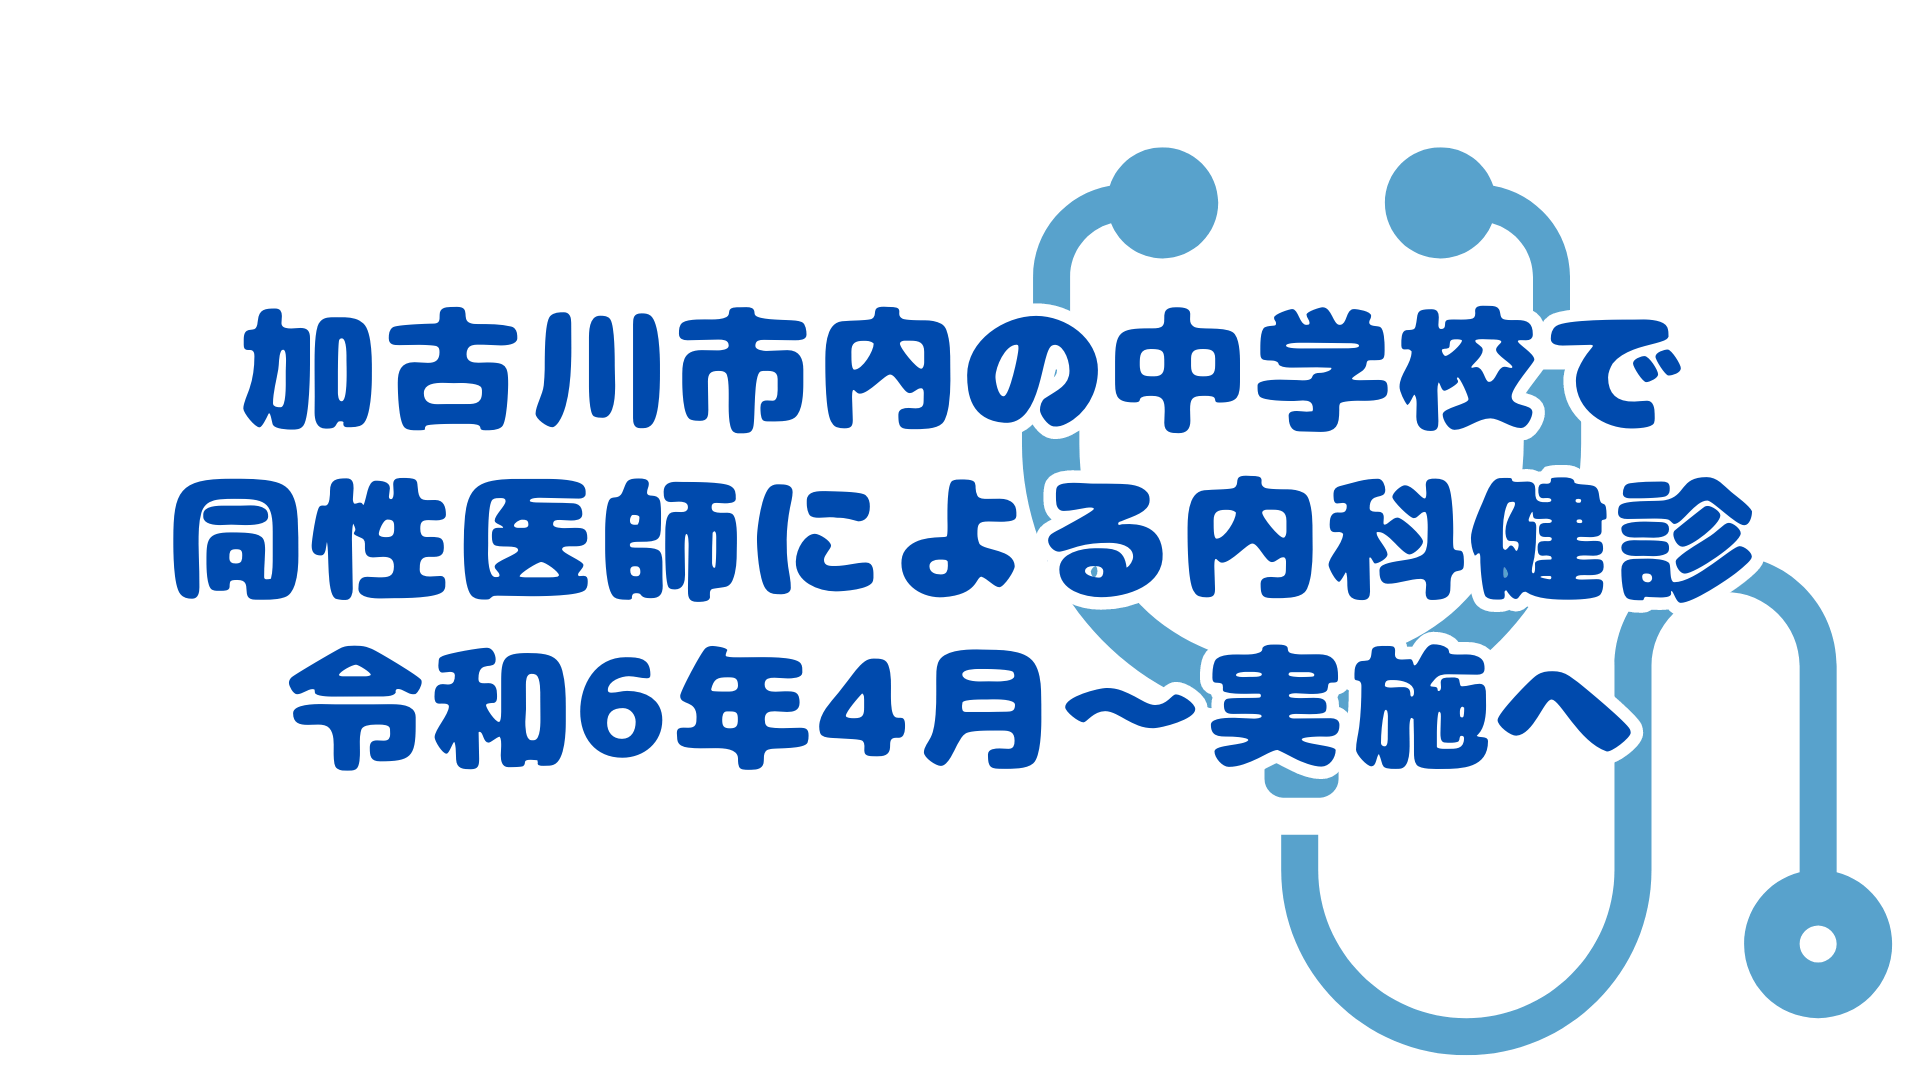 加古川市内の中学校で 同性医師による内科健診 令和6年4月～実施へ